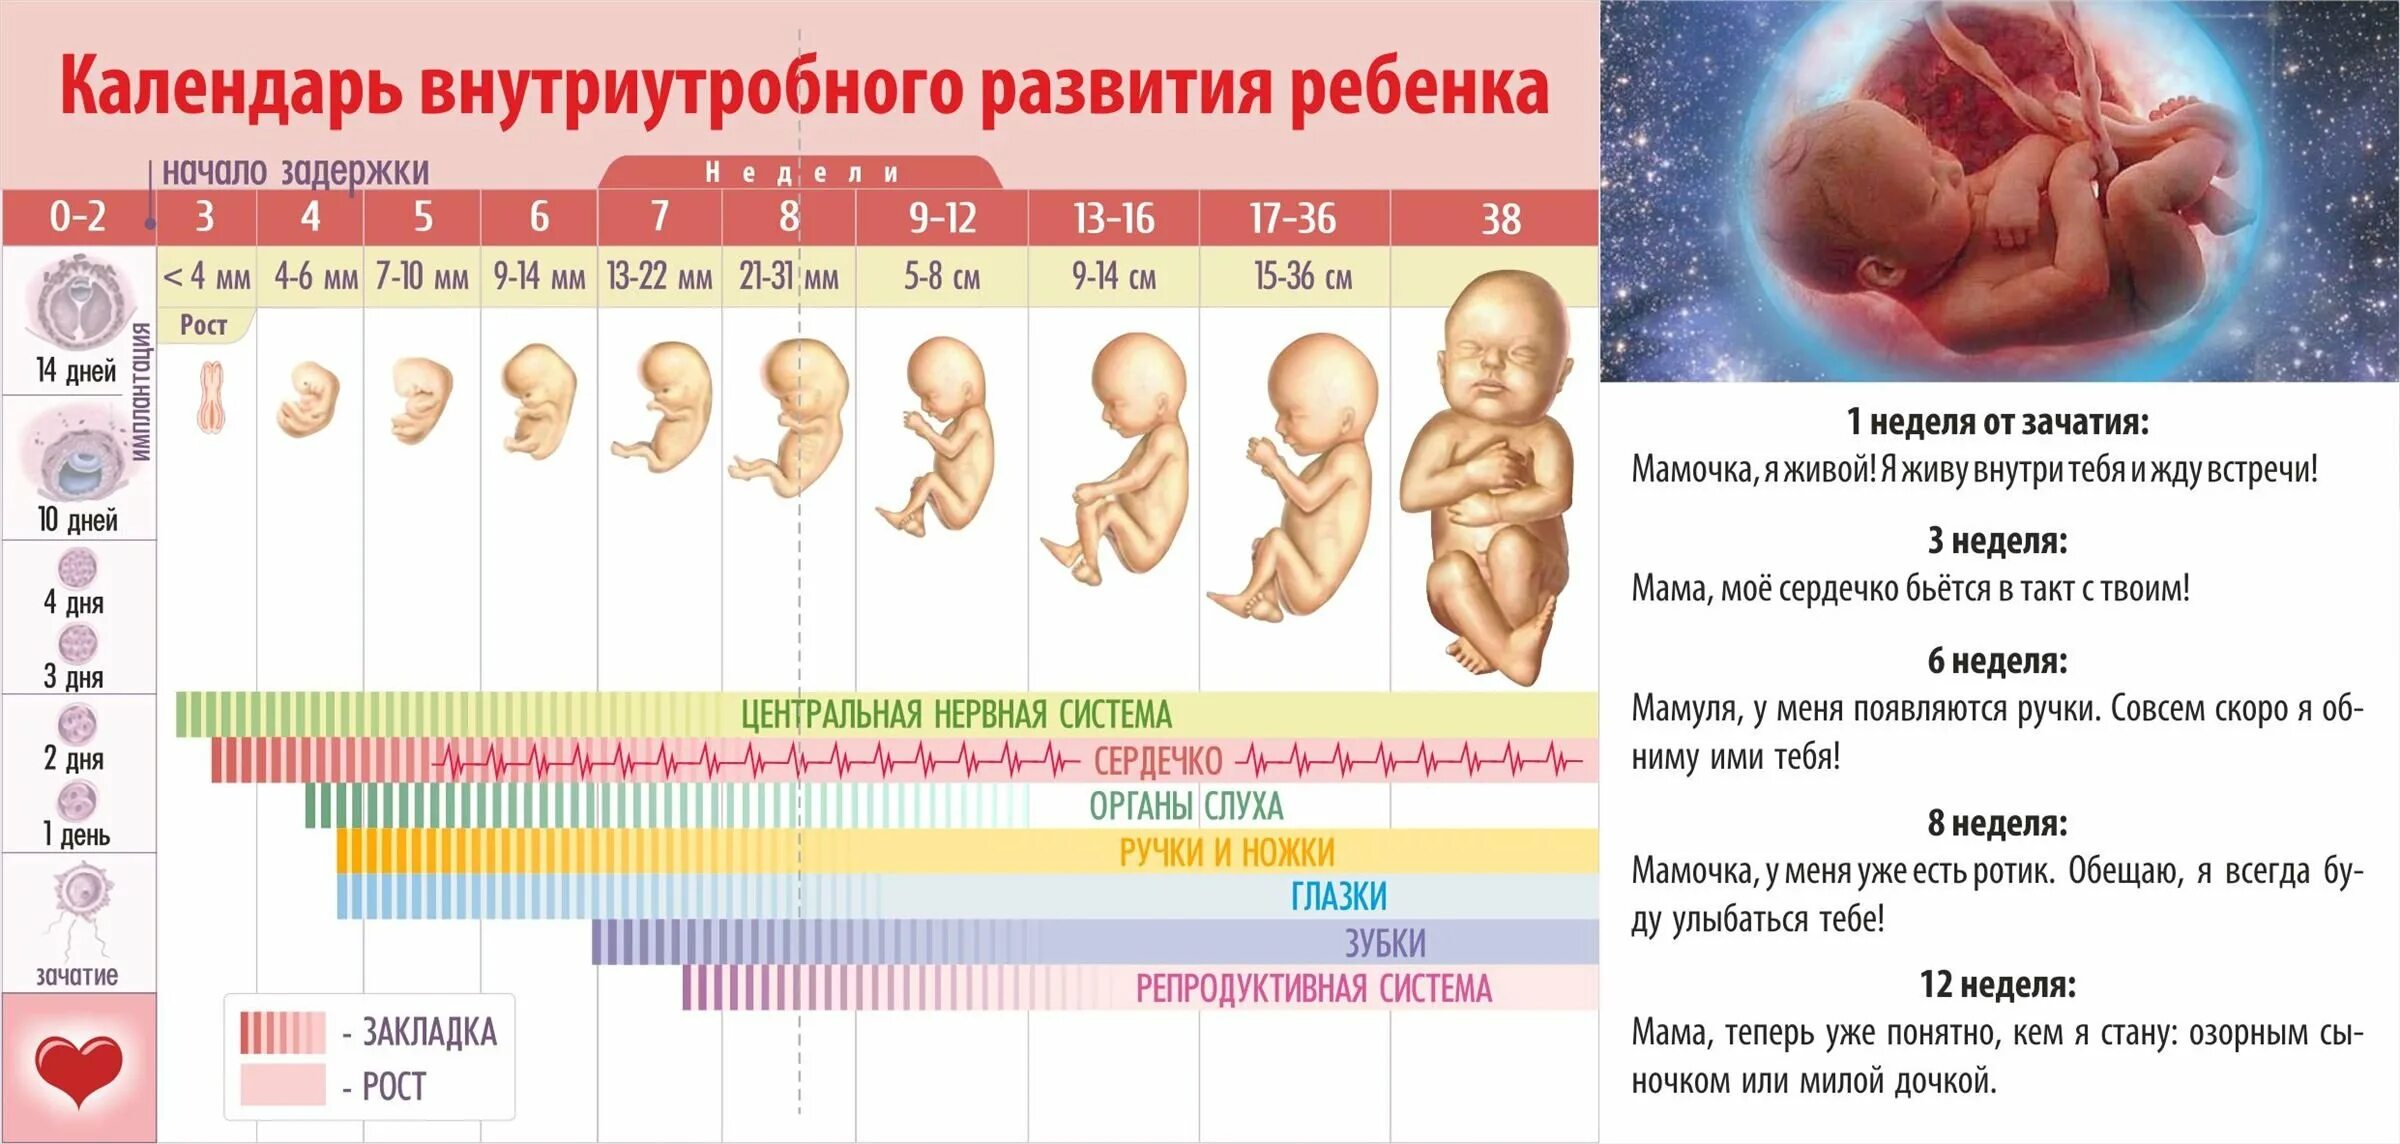 22 недели беременности размер. Периоды внутриутробного развития плода и эмбриона. Периоды формирования плода по неделям беременности. Формирование ребенка по неделям беременности фото плода по неделям. Стадии развития ребенка в утробе матери.